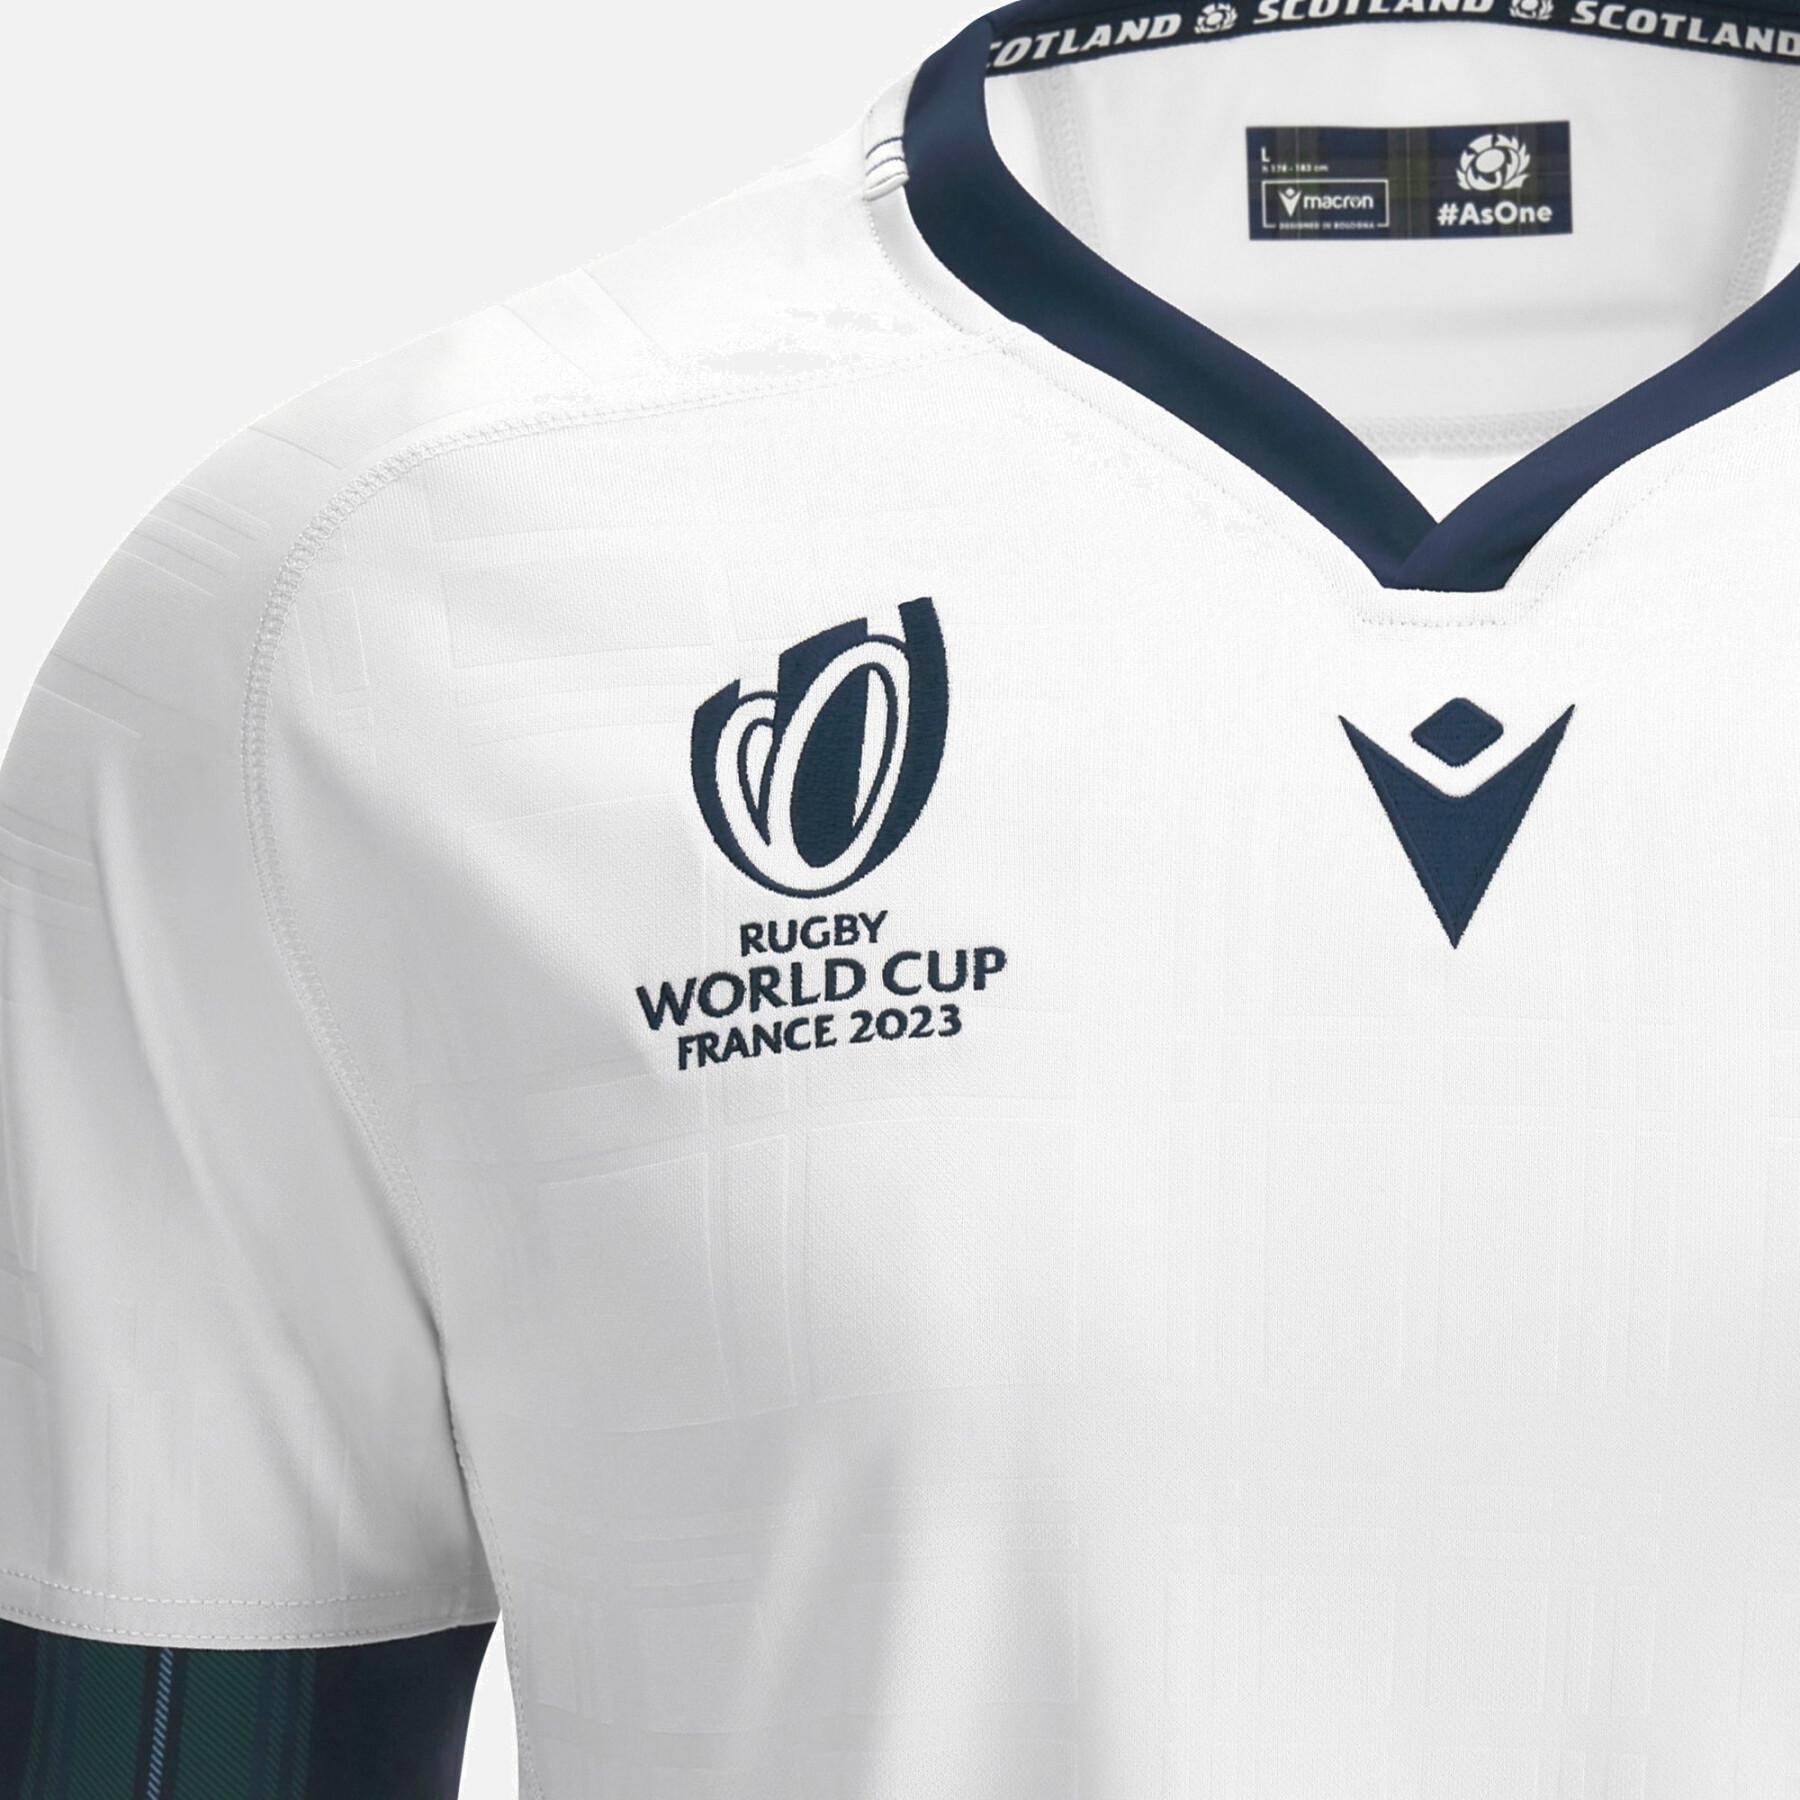 Camisola exterior do Campeonato do Mundo de Rugby de 2023 Écosse